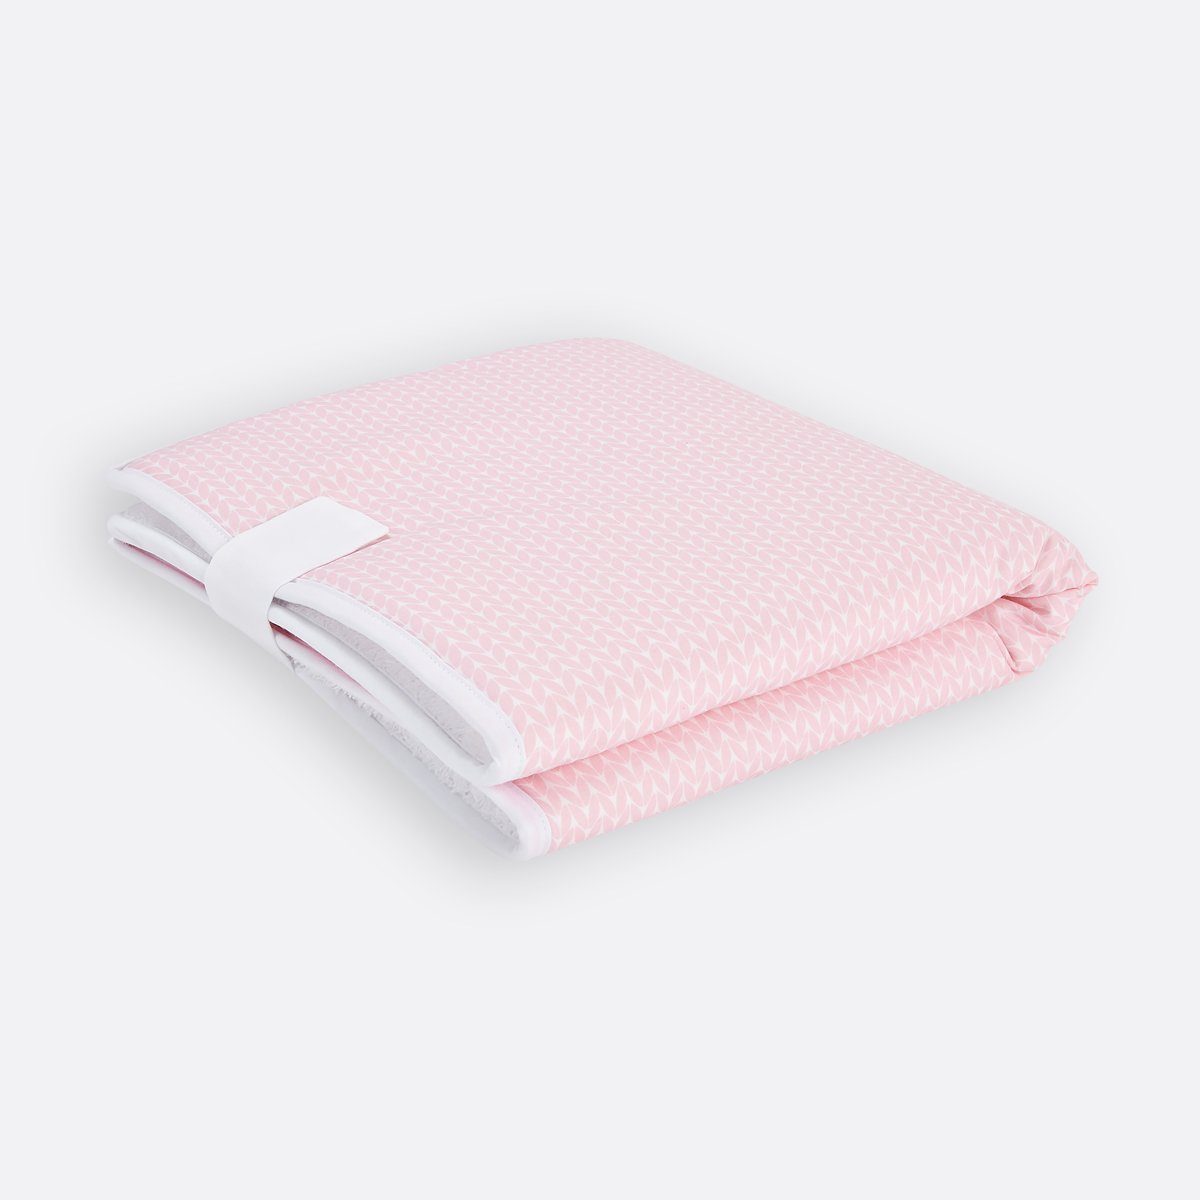 KraftKids Wickelauflage kleine Blätter rosa auf Weiß, Reisewickelunterlage aus 3 Stoffsichten, 100% Baumwolle, Innen wasserundurchlässig, faltbar mit Klettverschluss